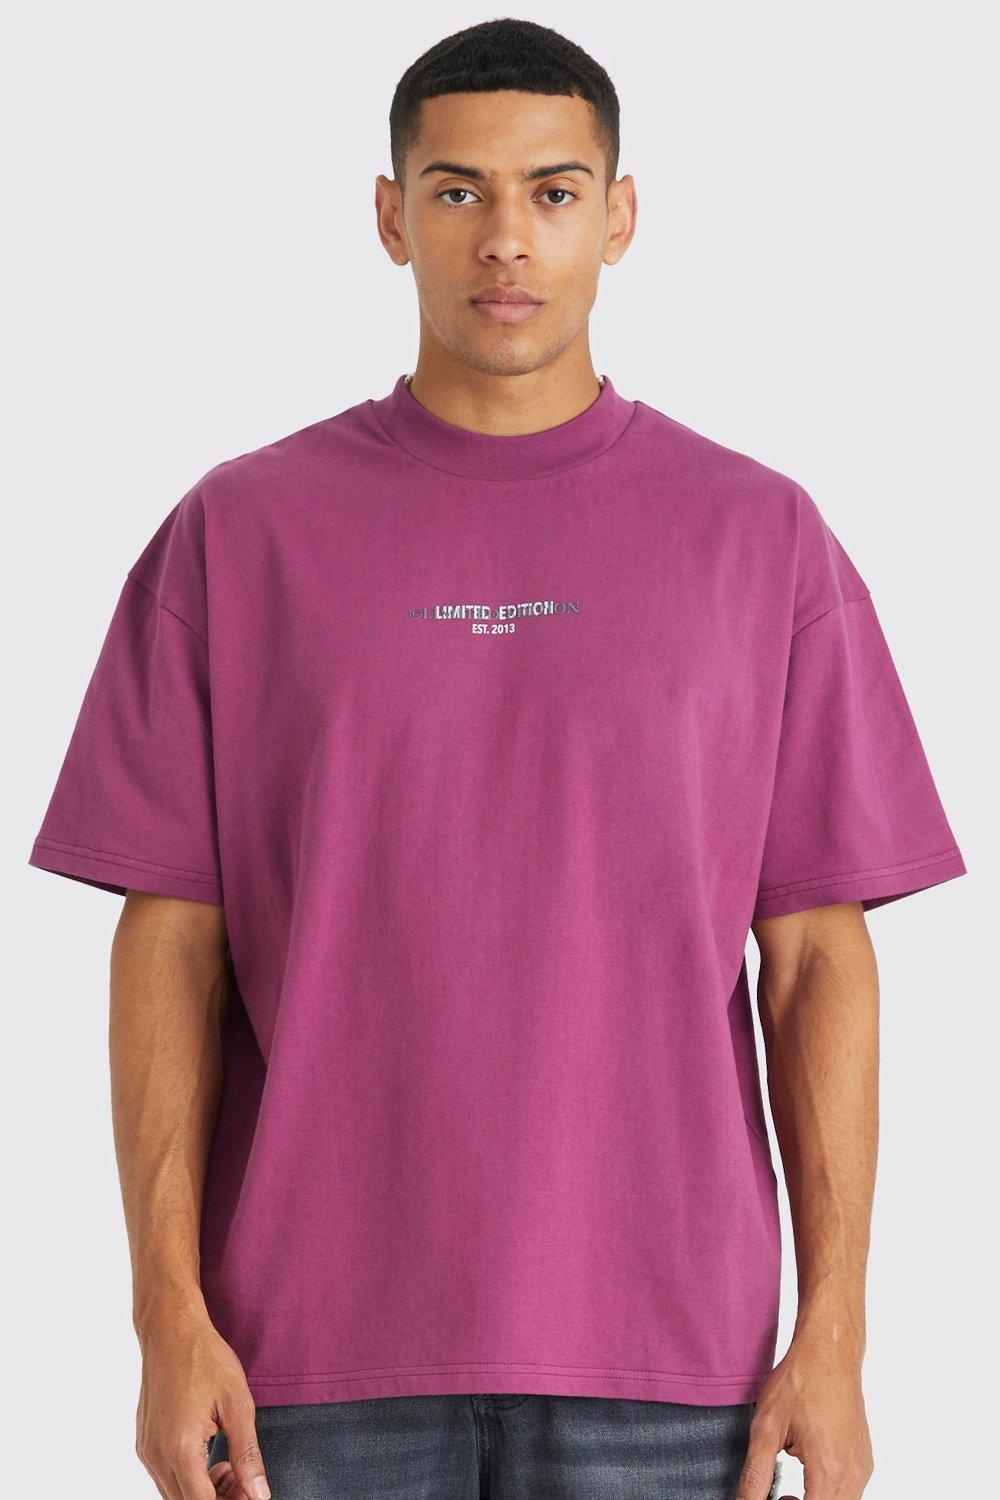 Mens Pink Heavyweight Oversized T-shirt, Pink